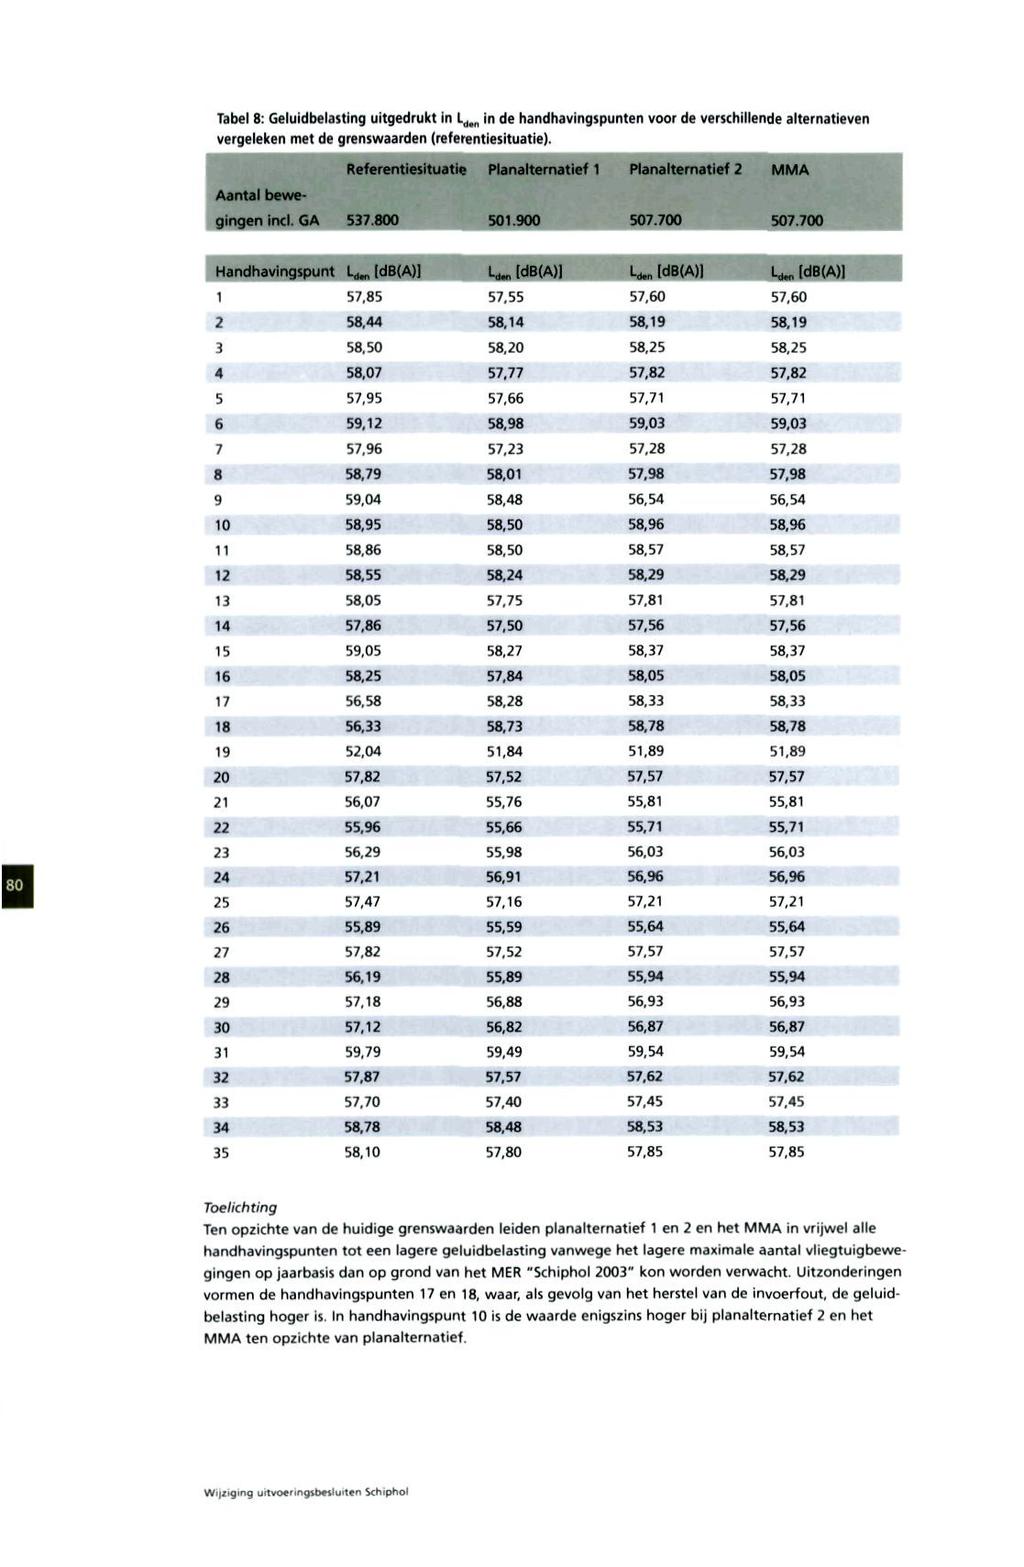 Tabel 8: Geluidbelasting uitgedrukt in L d#n in de handhavingspunten voor de verschillende alternatieven vergeleken met de grenswaarden (referentiesituatie). Handhavingspunl : L^[dB(A)] L d [db(a) L.